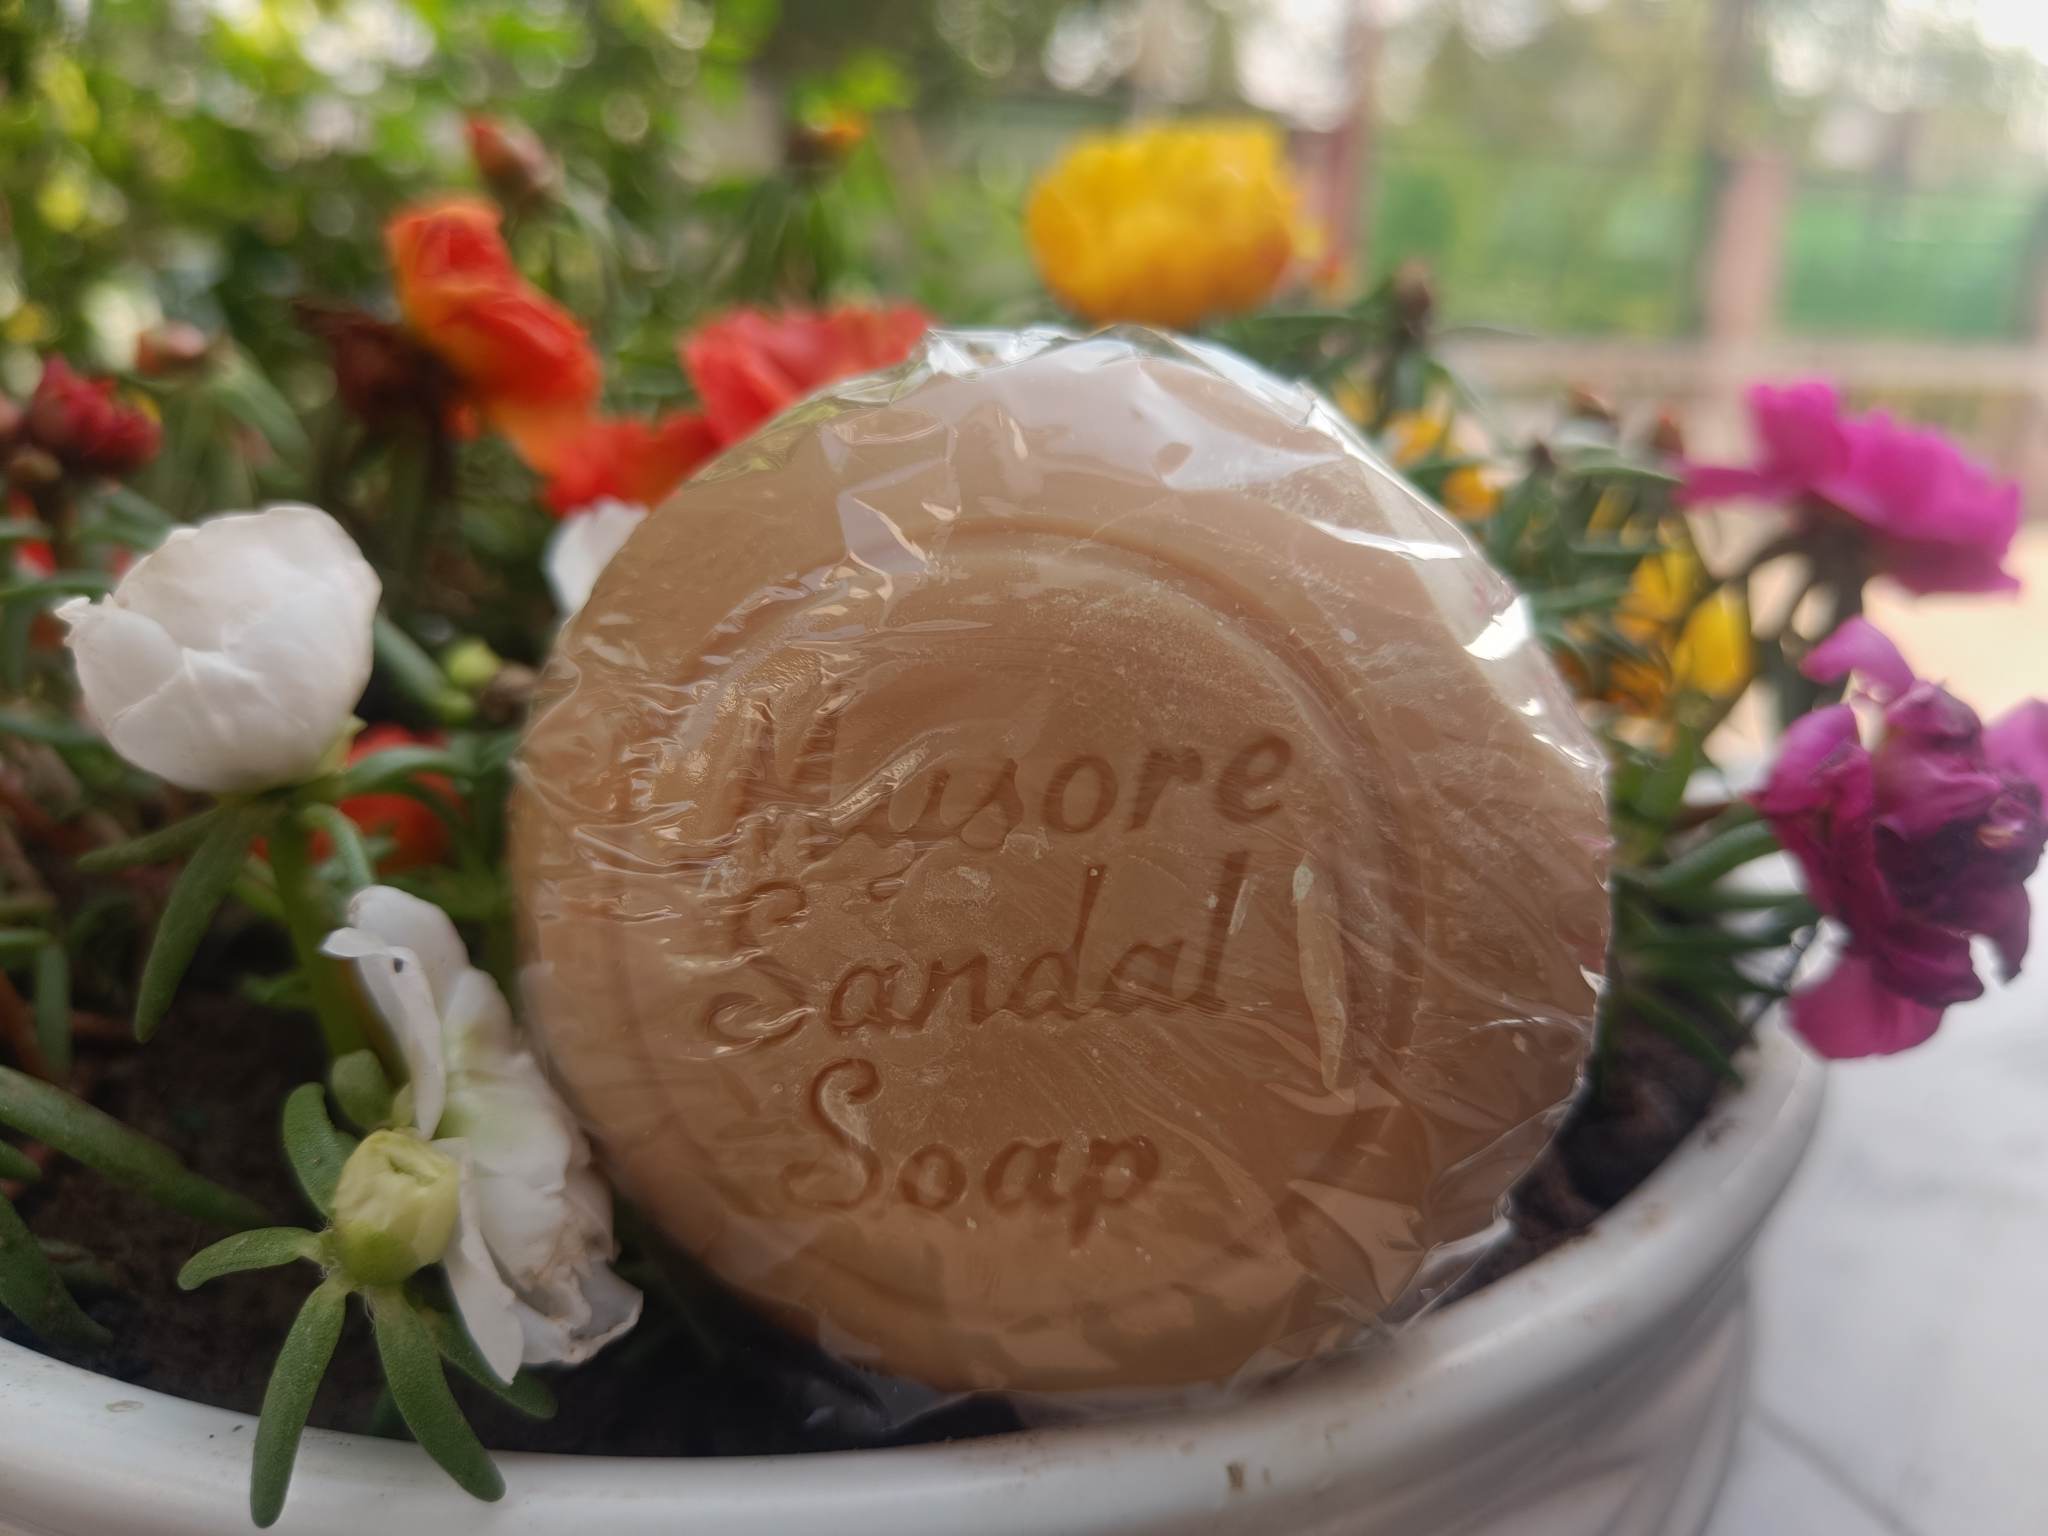 Mysore Sandal Soap| Review